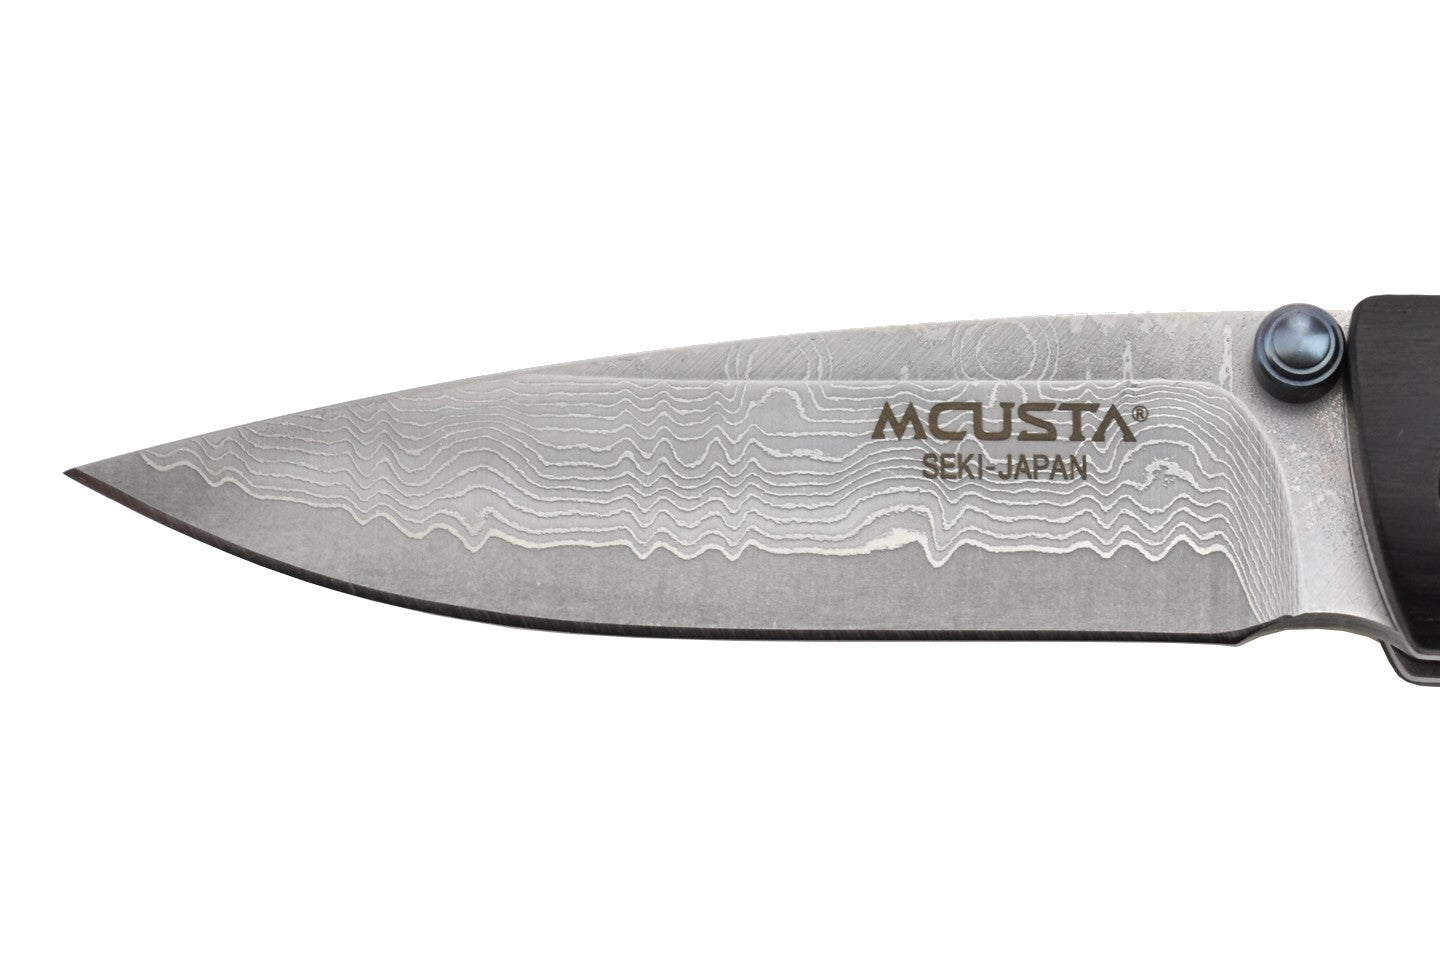 Mcusta MC-76DP Take - Lame Damas et acier composite VG-10 - Manche pakkawood noir